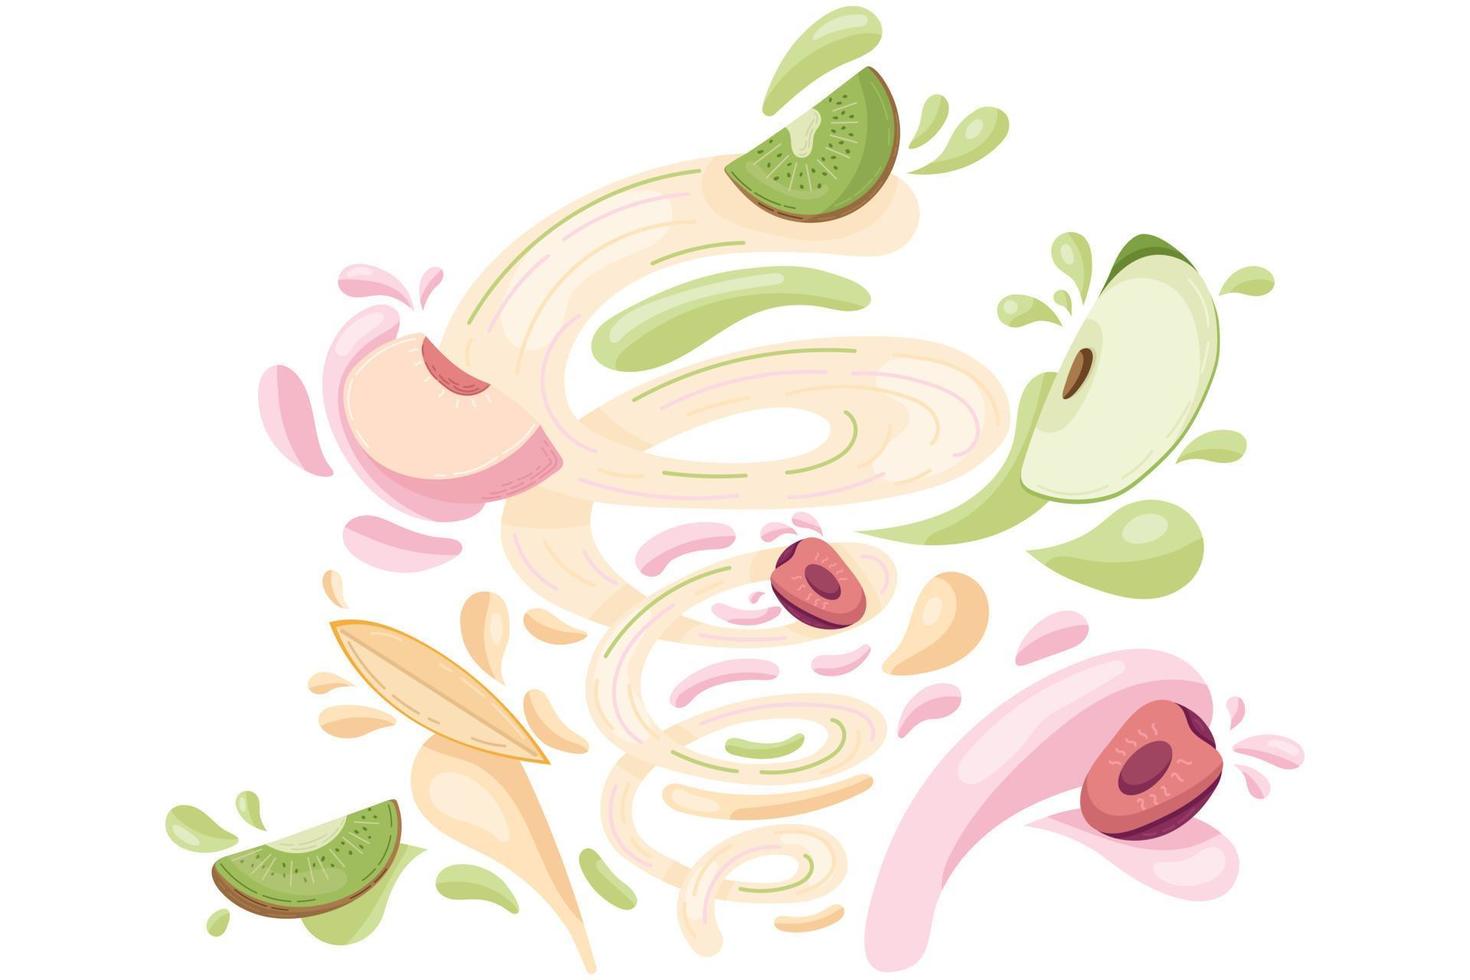 faire des smoothies aux fruits frais, préparer des aliments biologiques sains. jus de kiwi, pêche, cerise, pomme et mangue dans un style cartoon plat. illustration vectorielle vecteur